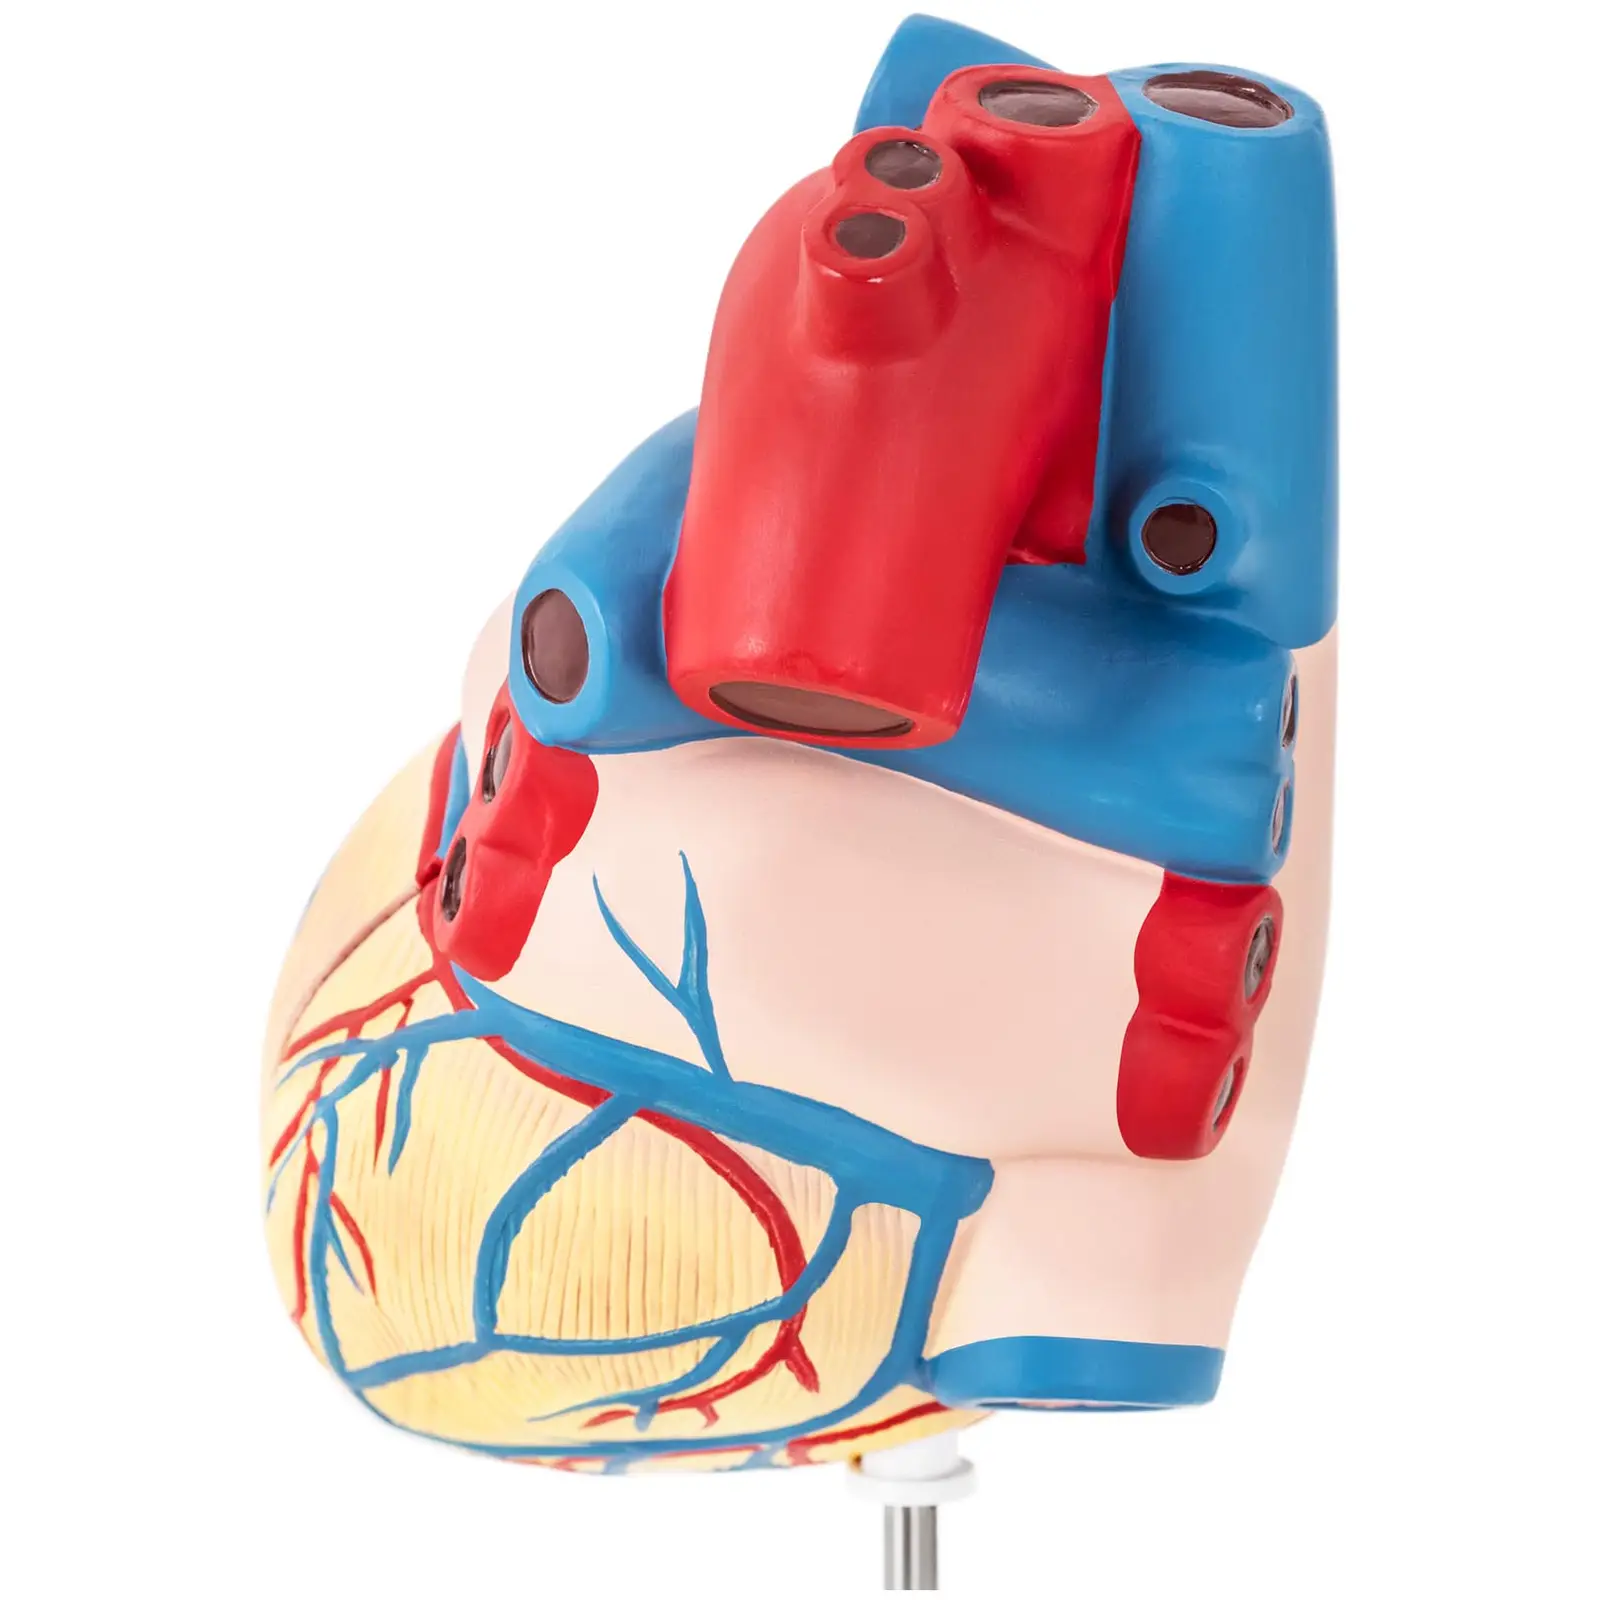 Hjärta - Anatomisk modell - Kan demonteras i två delar - Originalstorlek